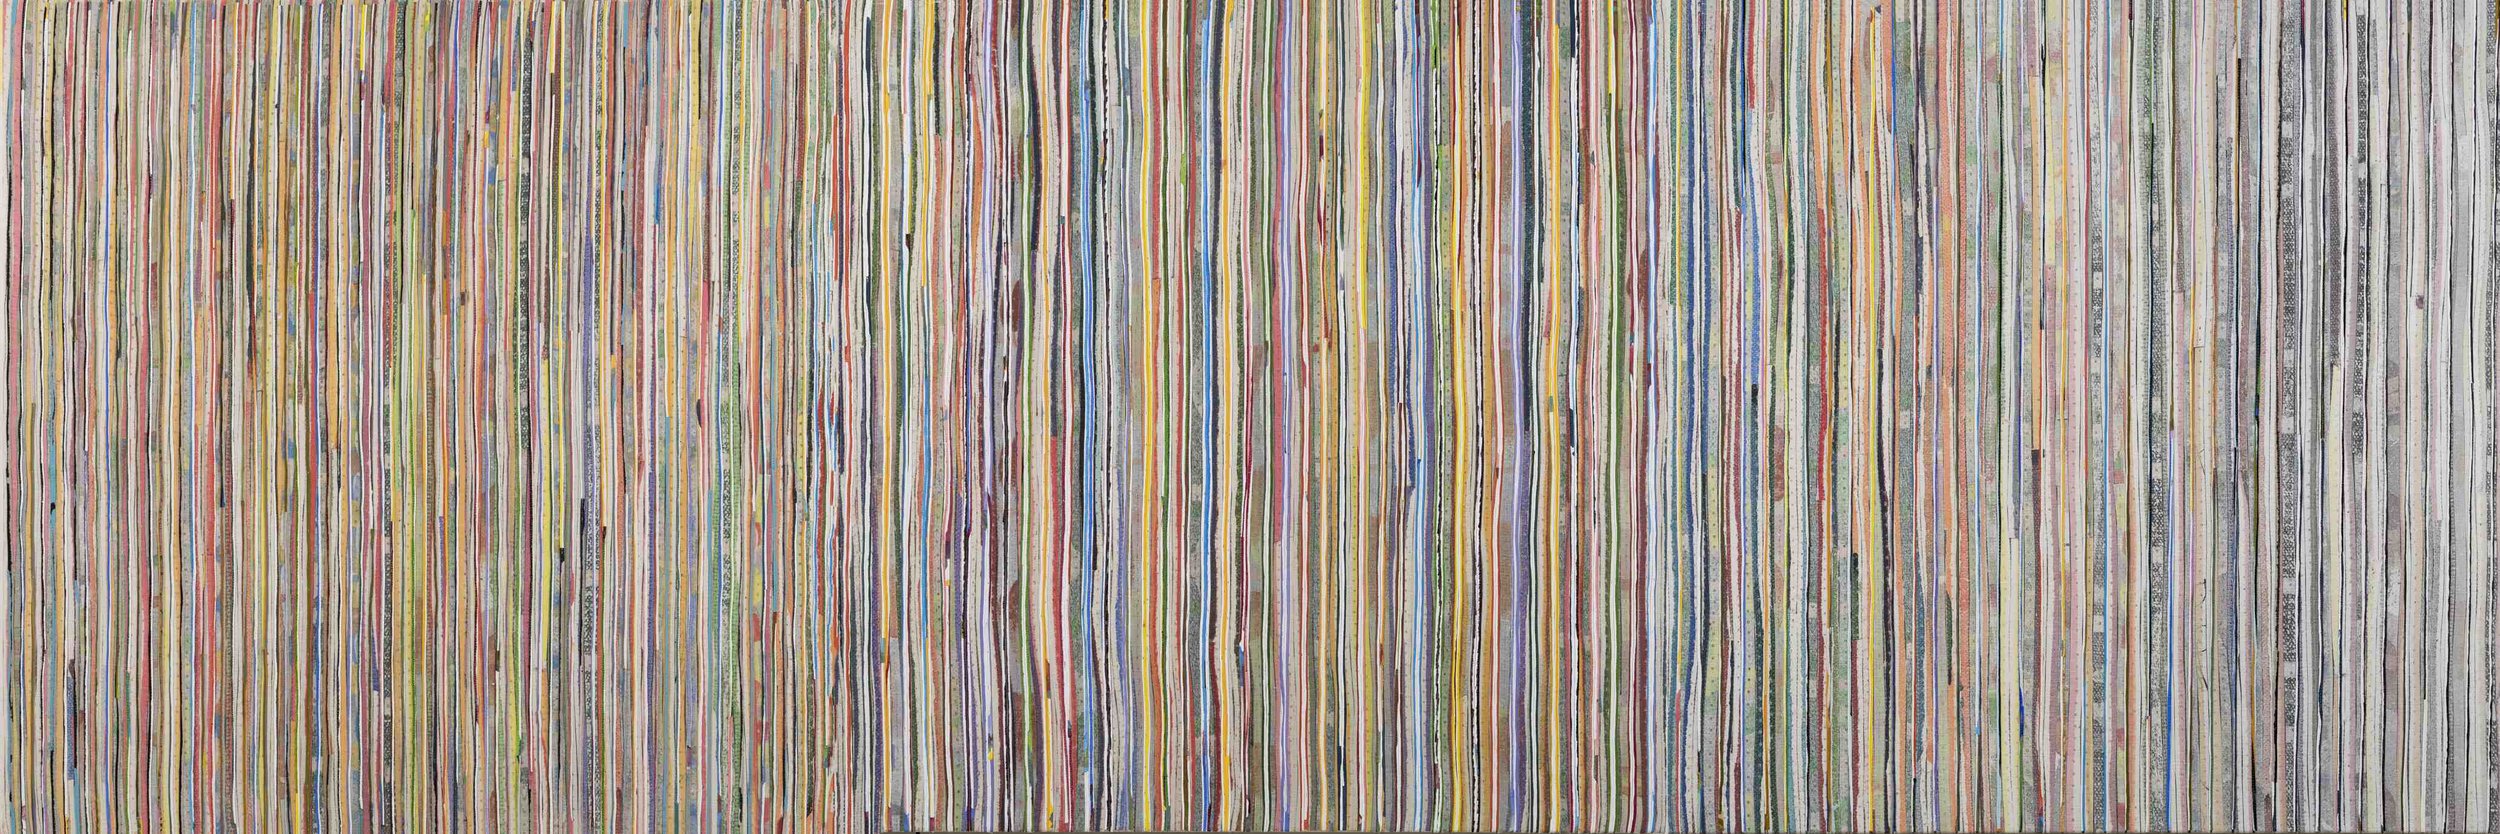 Eveline Kotai - Karri Shift, 2016, mixed media, 100x300cm